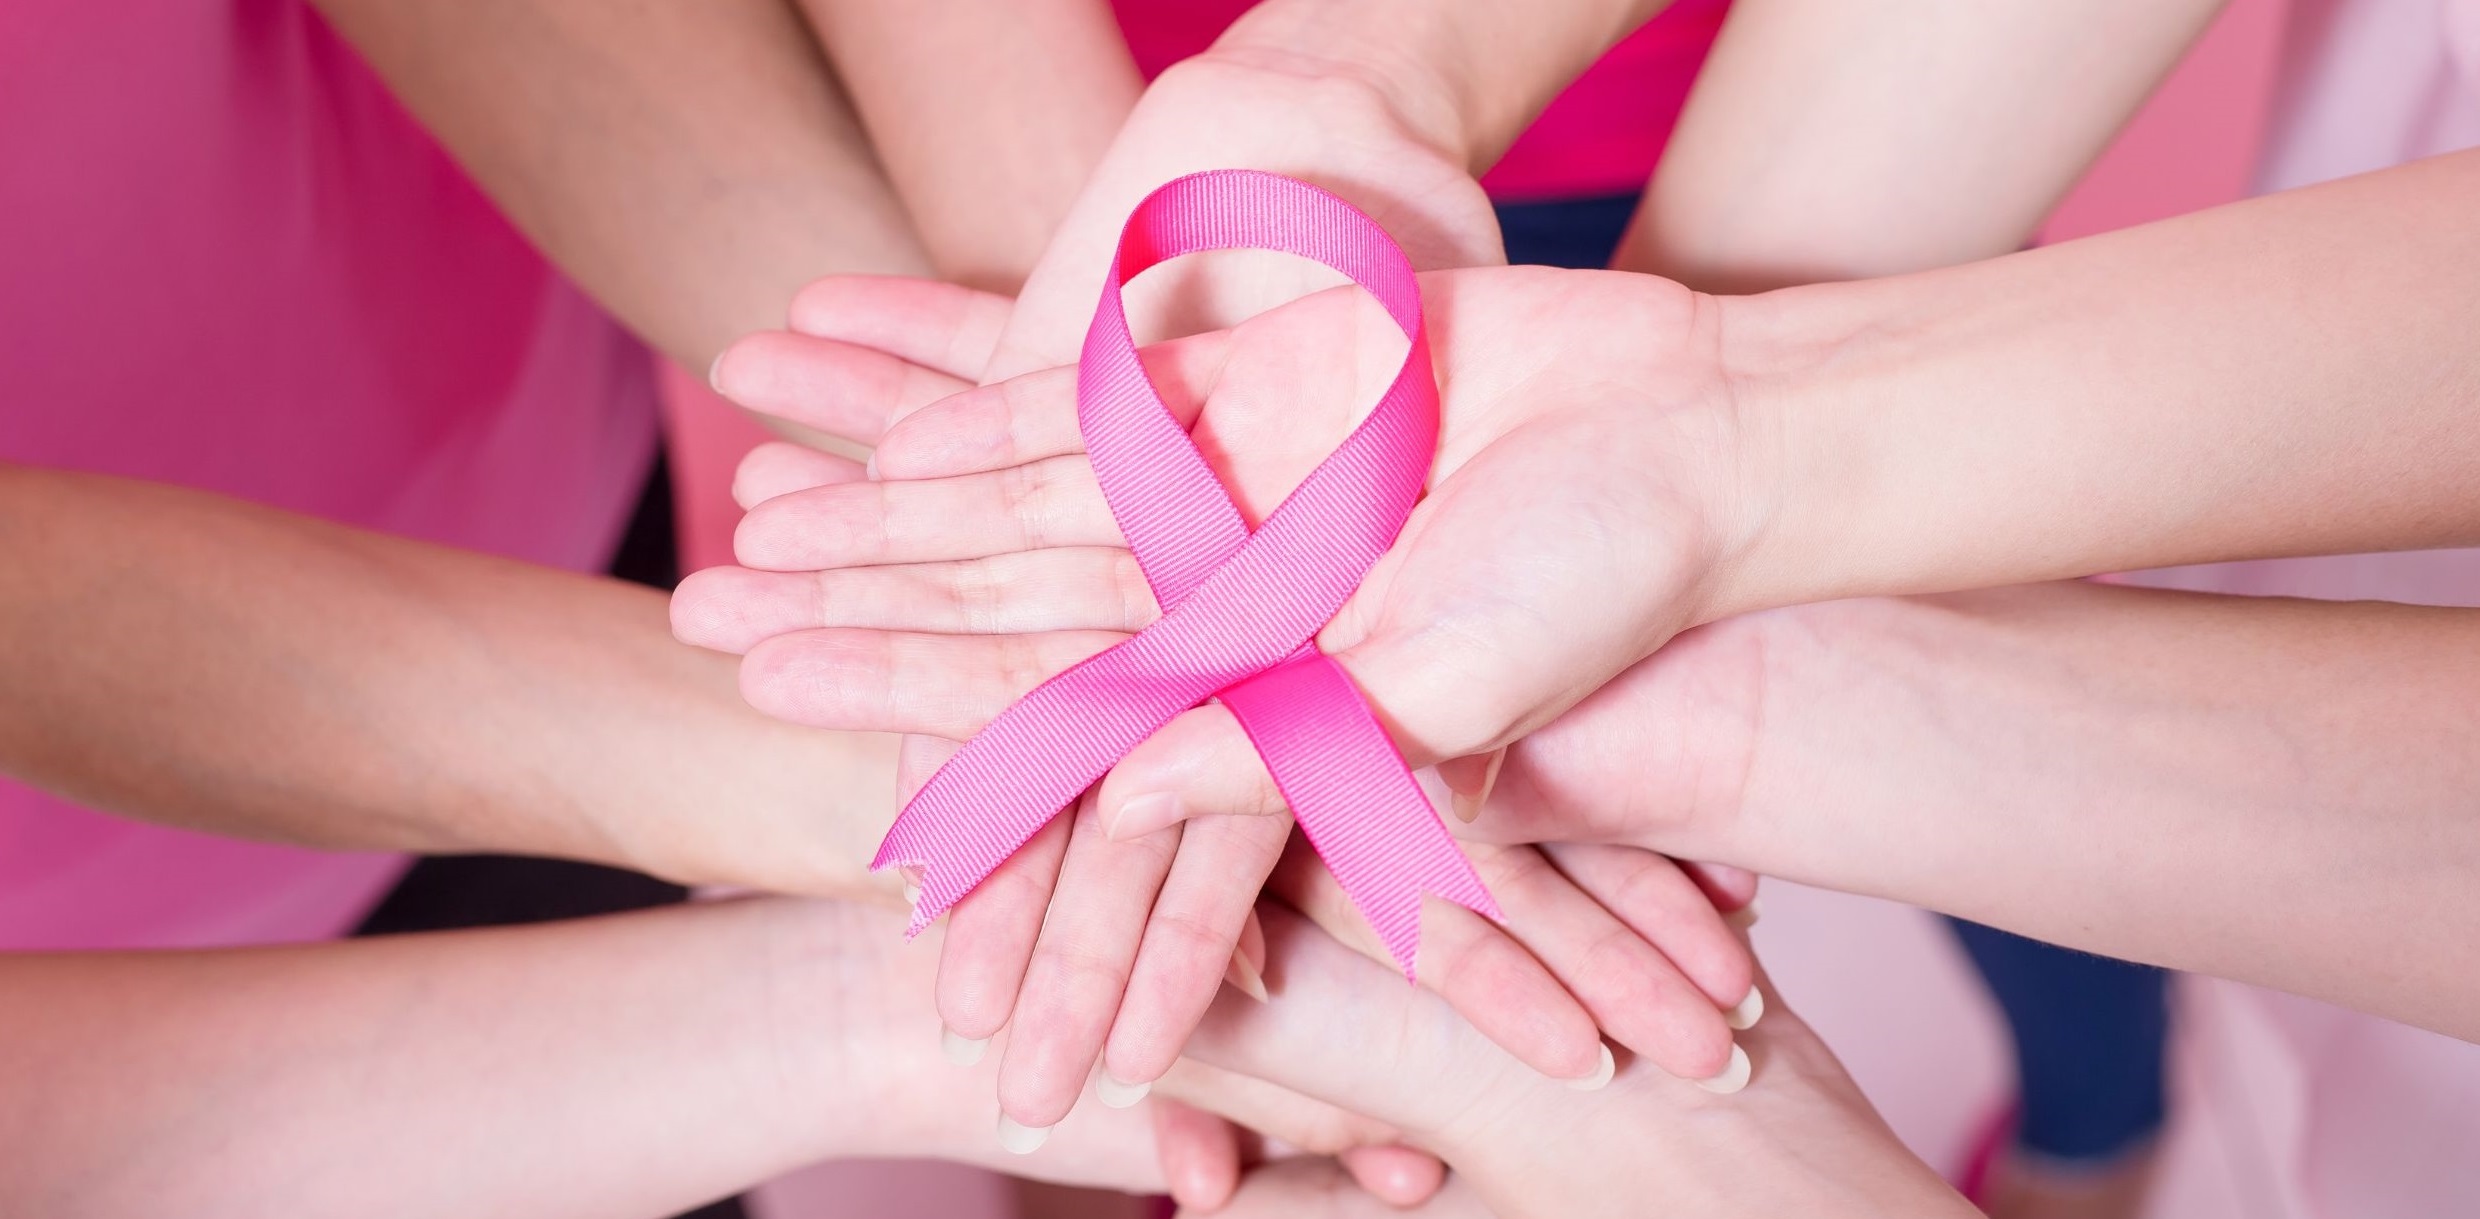 دراسة جديدة تحرز تقدمًا في فهم سرطان الثدي من منظورٍ جيني...